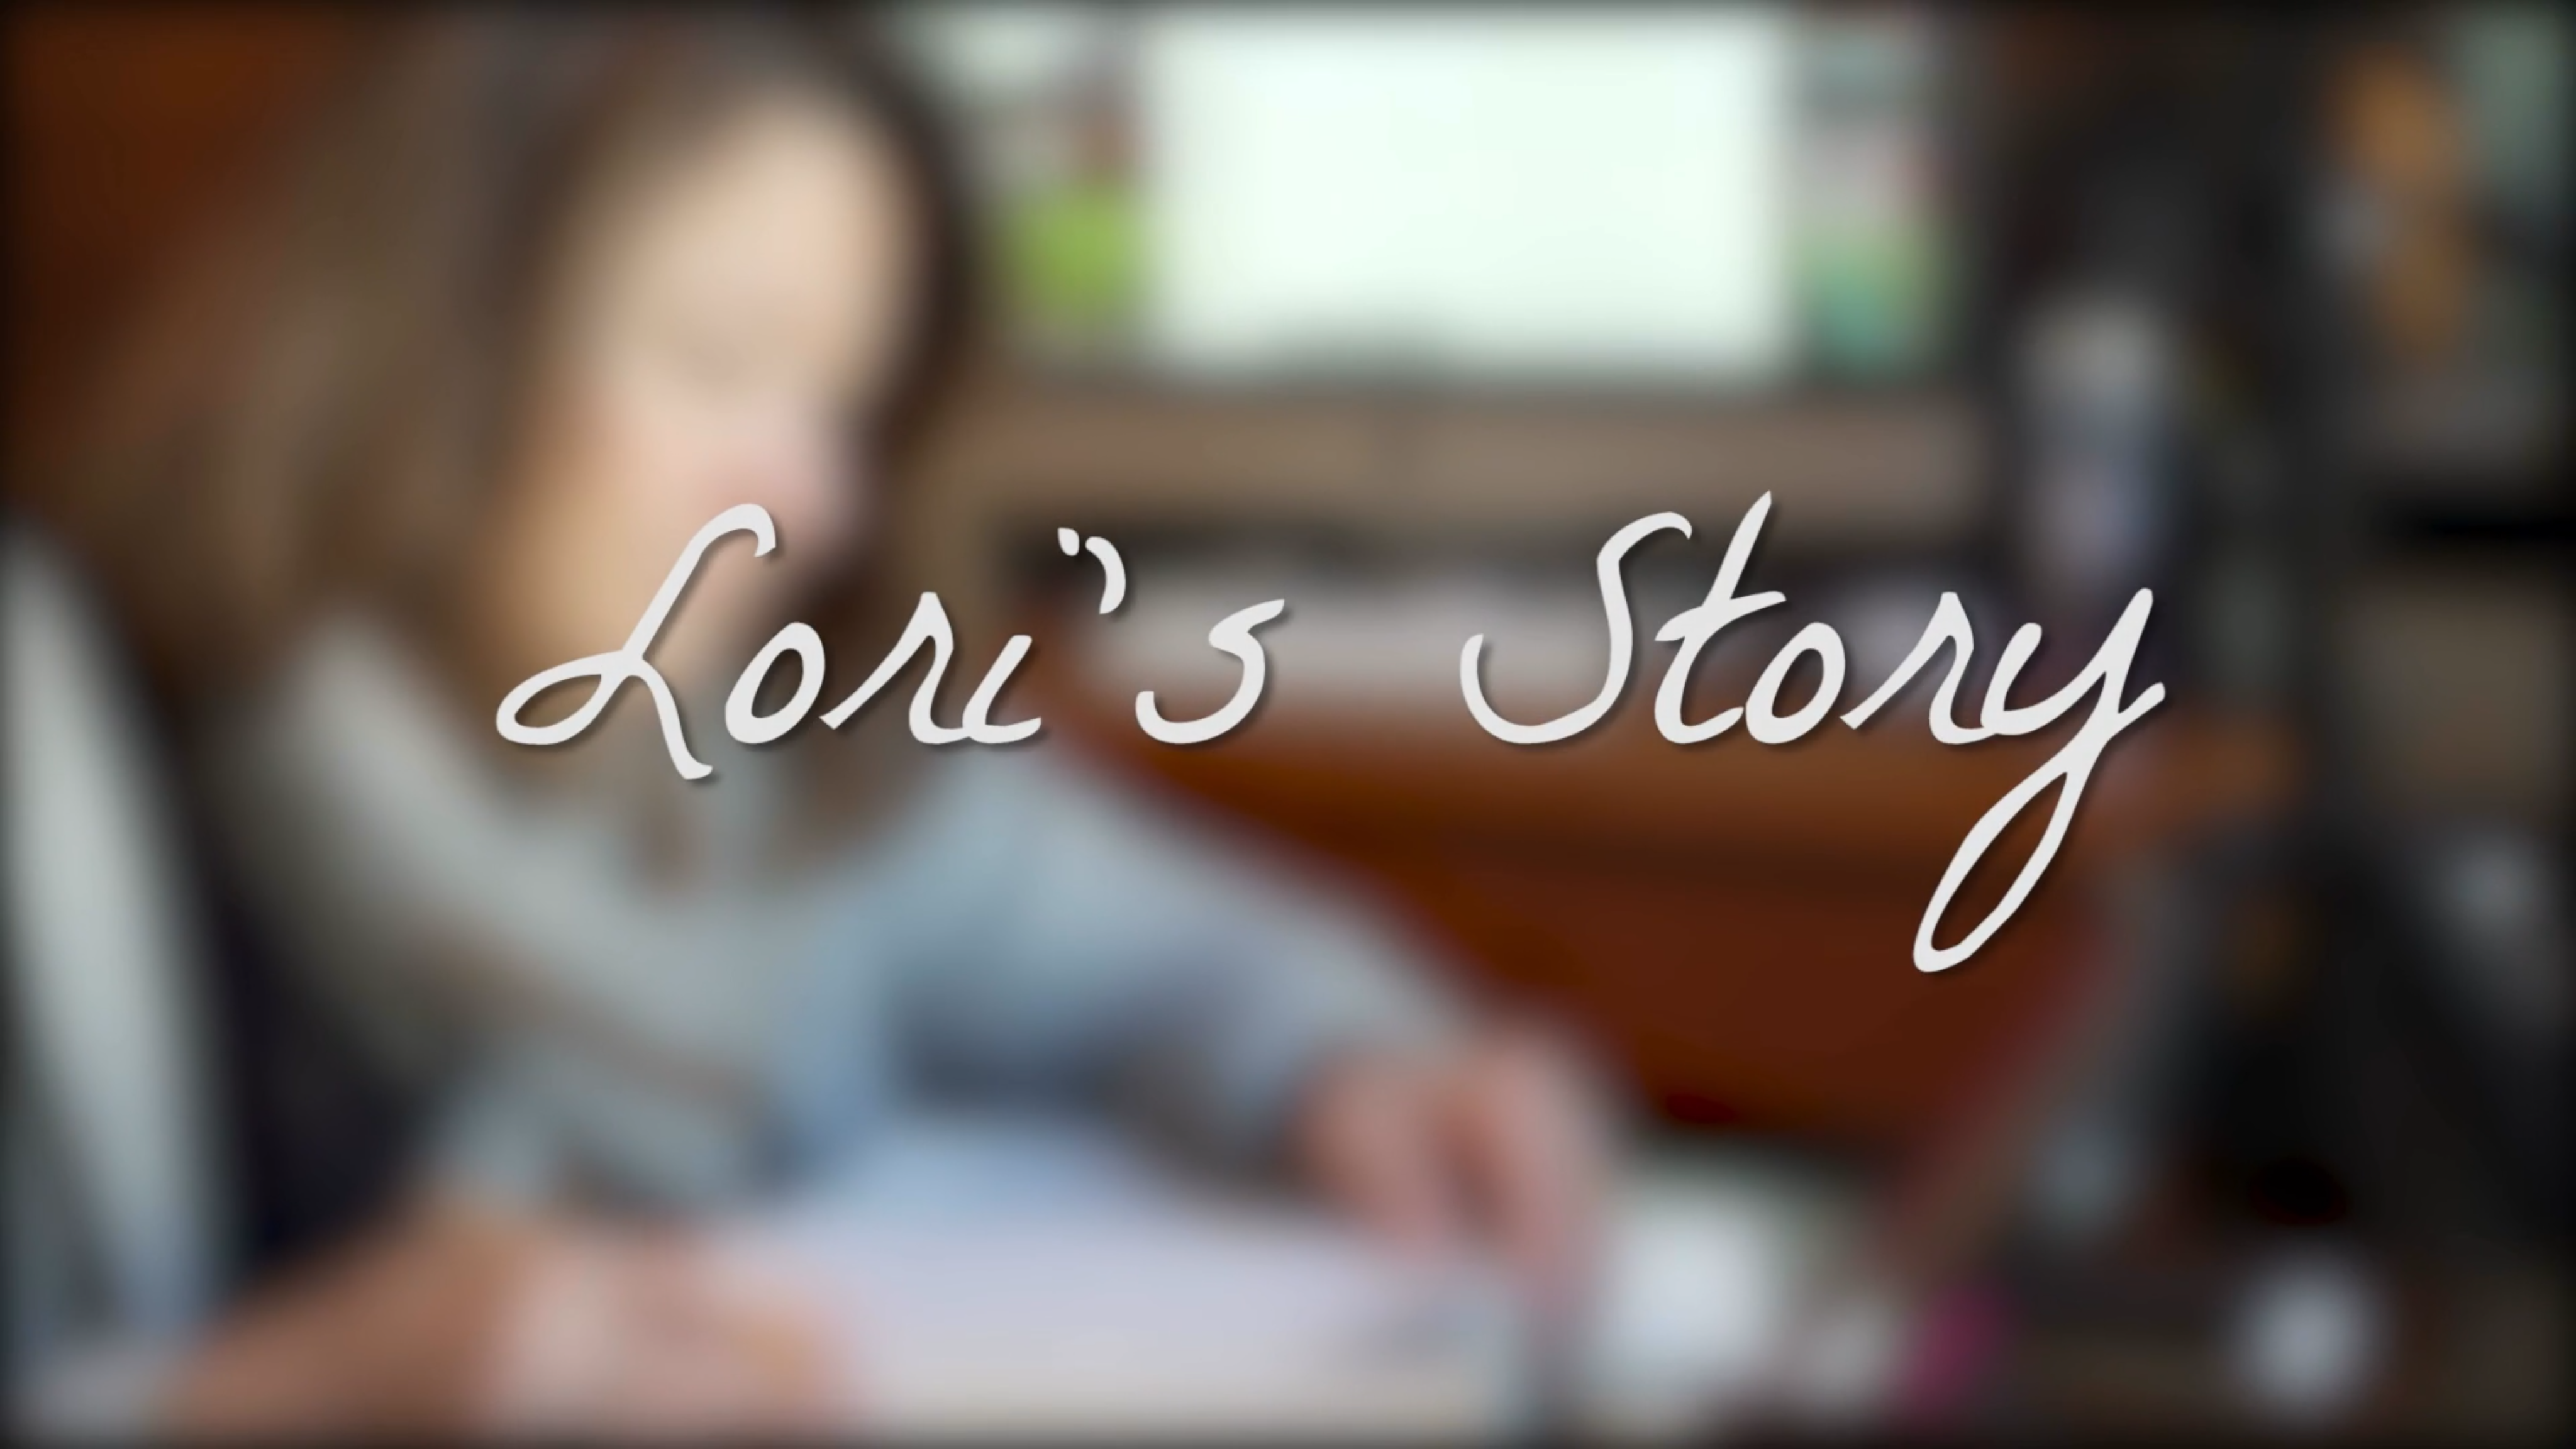 Lori's Story